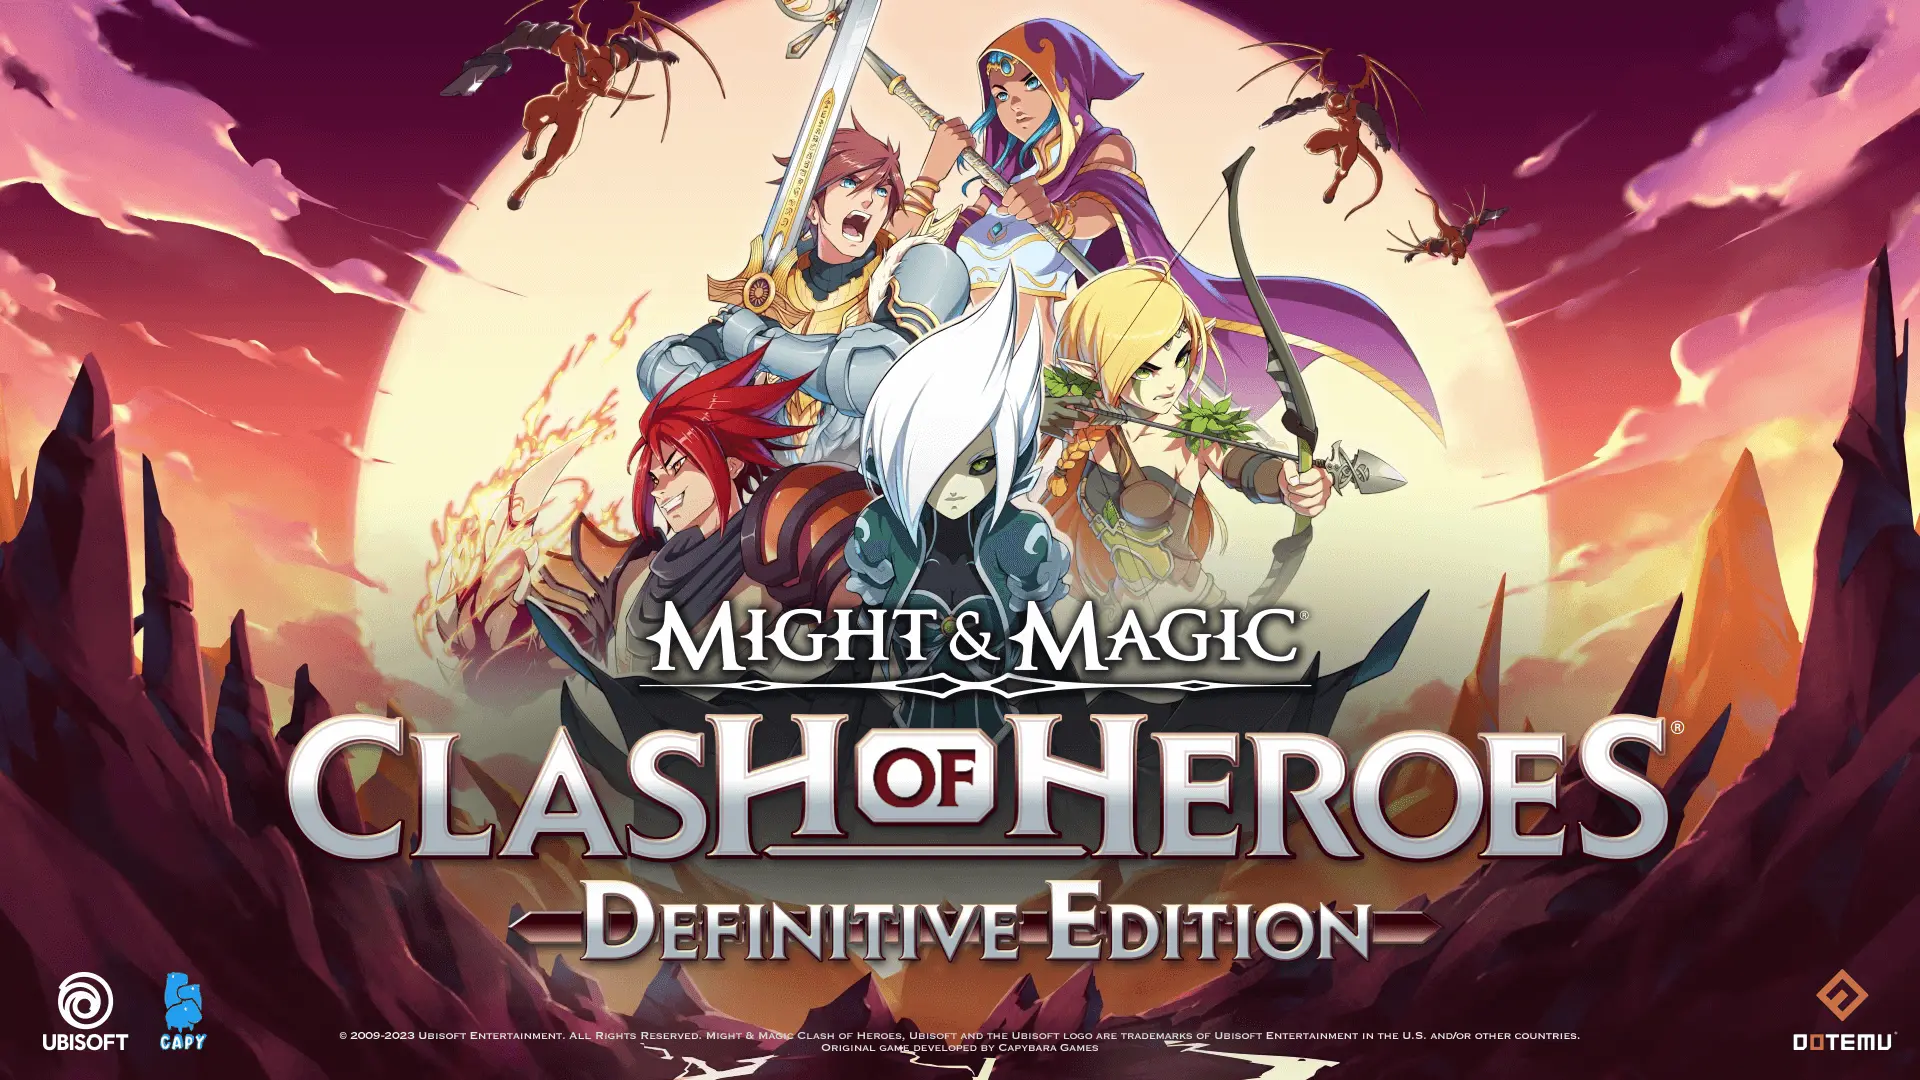 Might & Magic: Clash of Heroes – Definitive Edition arribarà el 20 de juliol